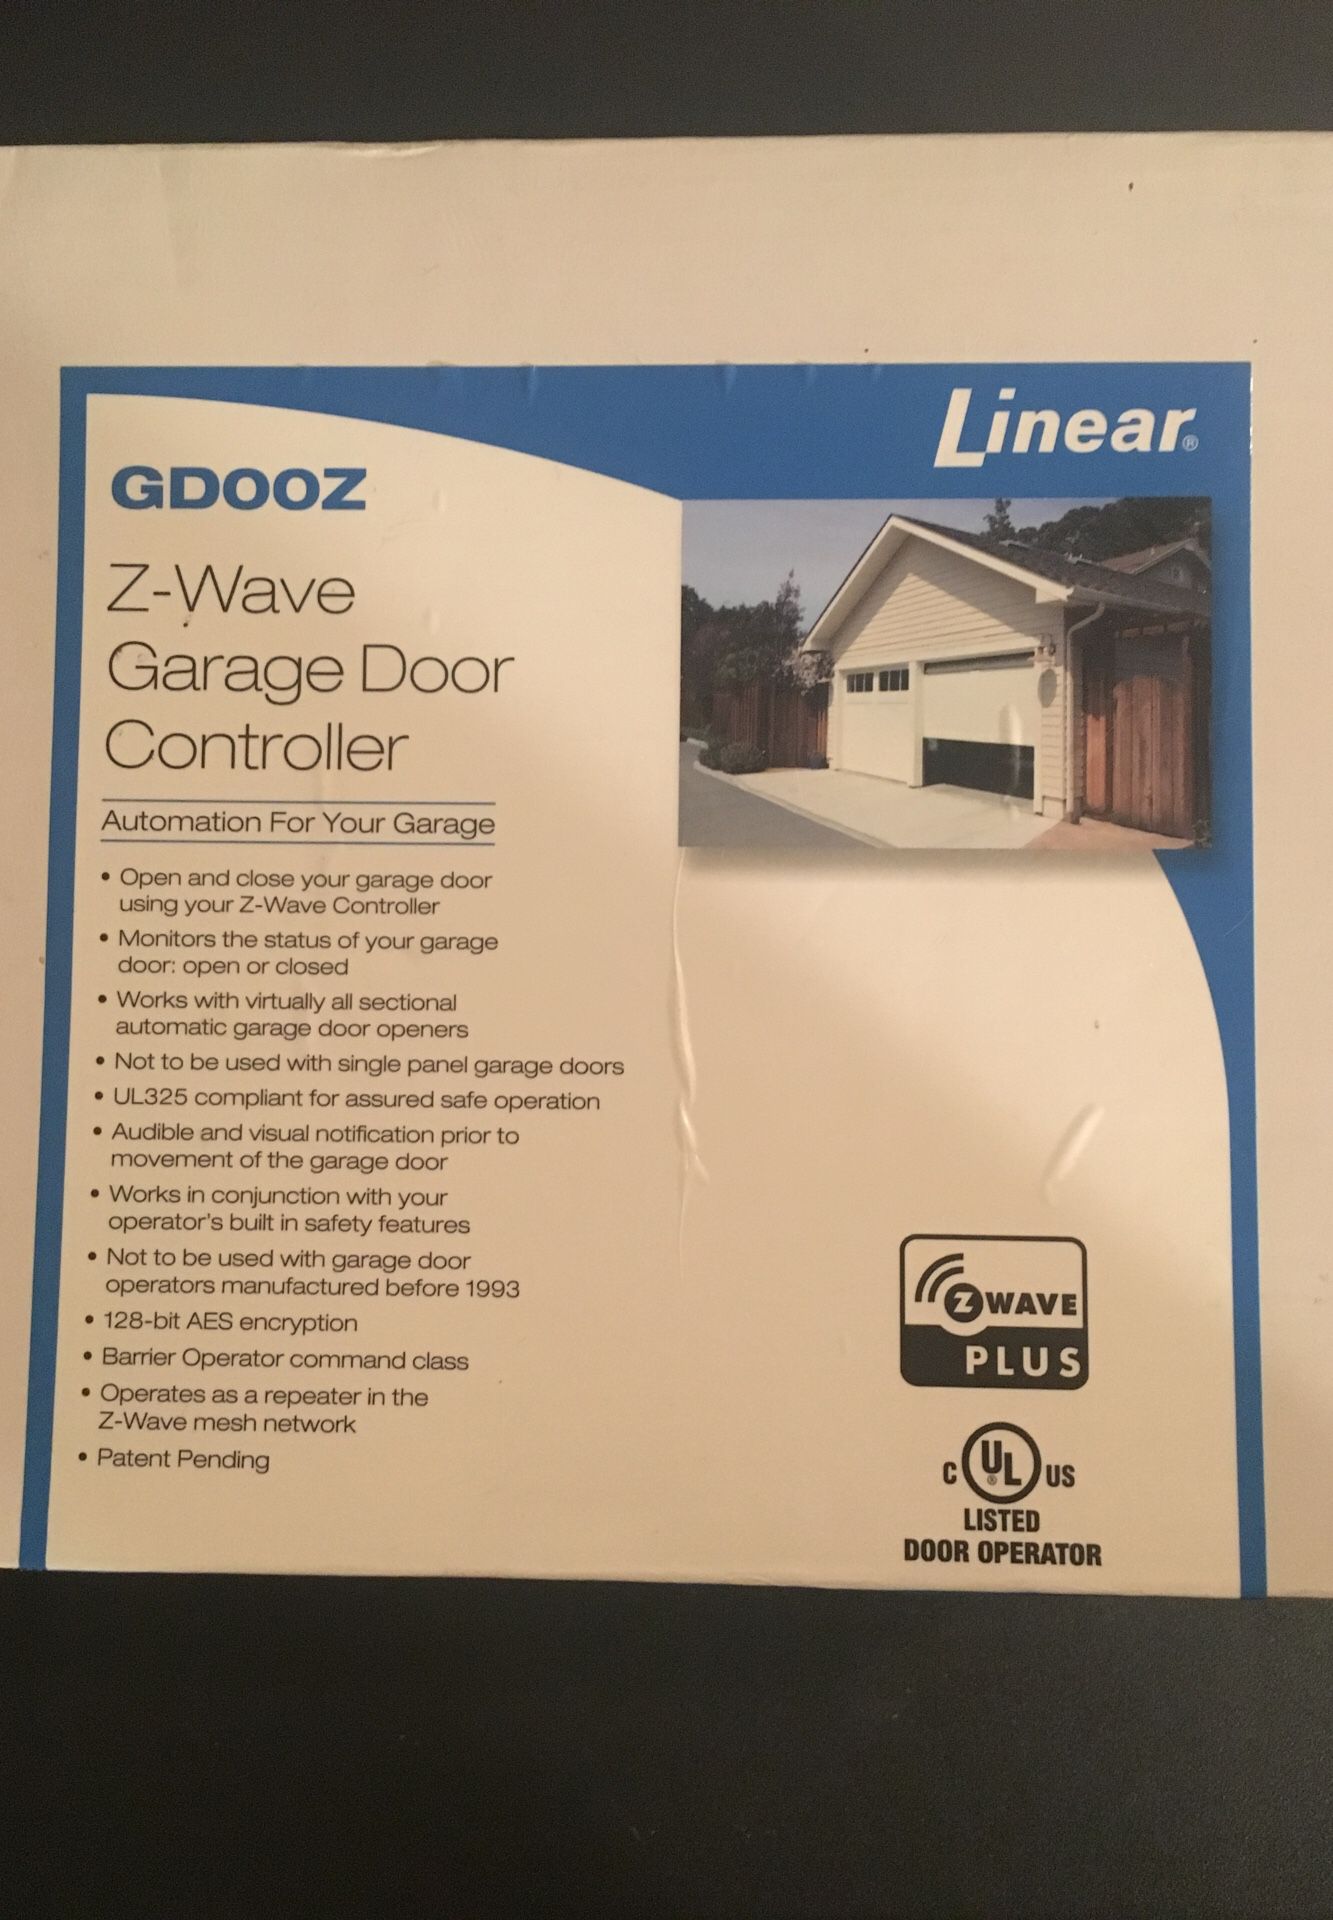 Linear Z-Wave Garage Door Controller